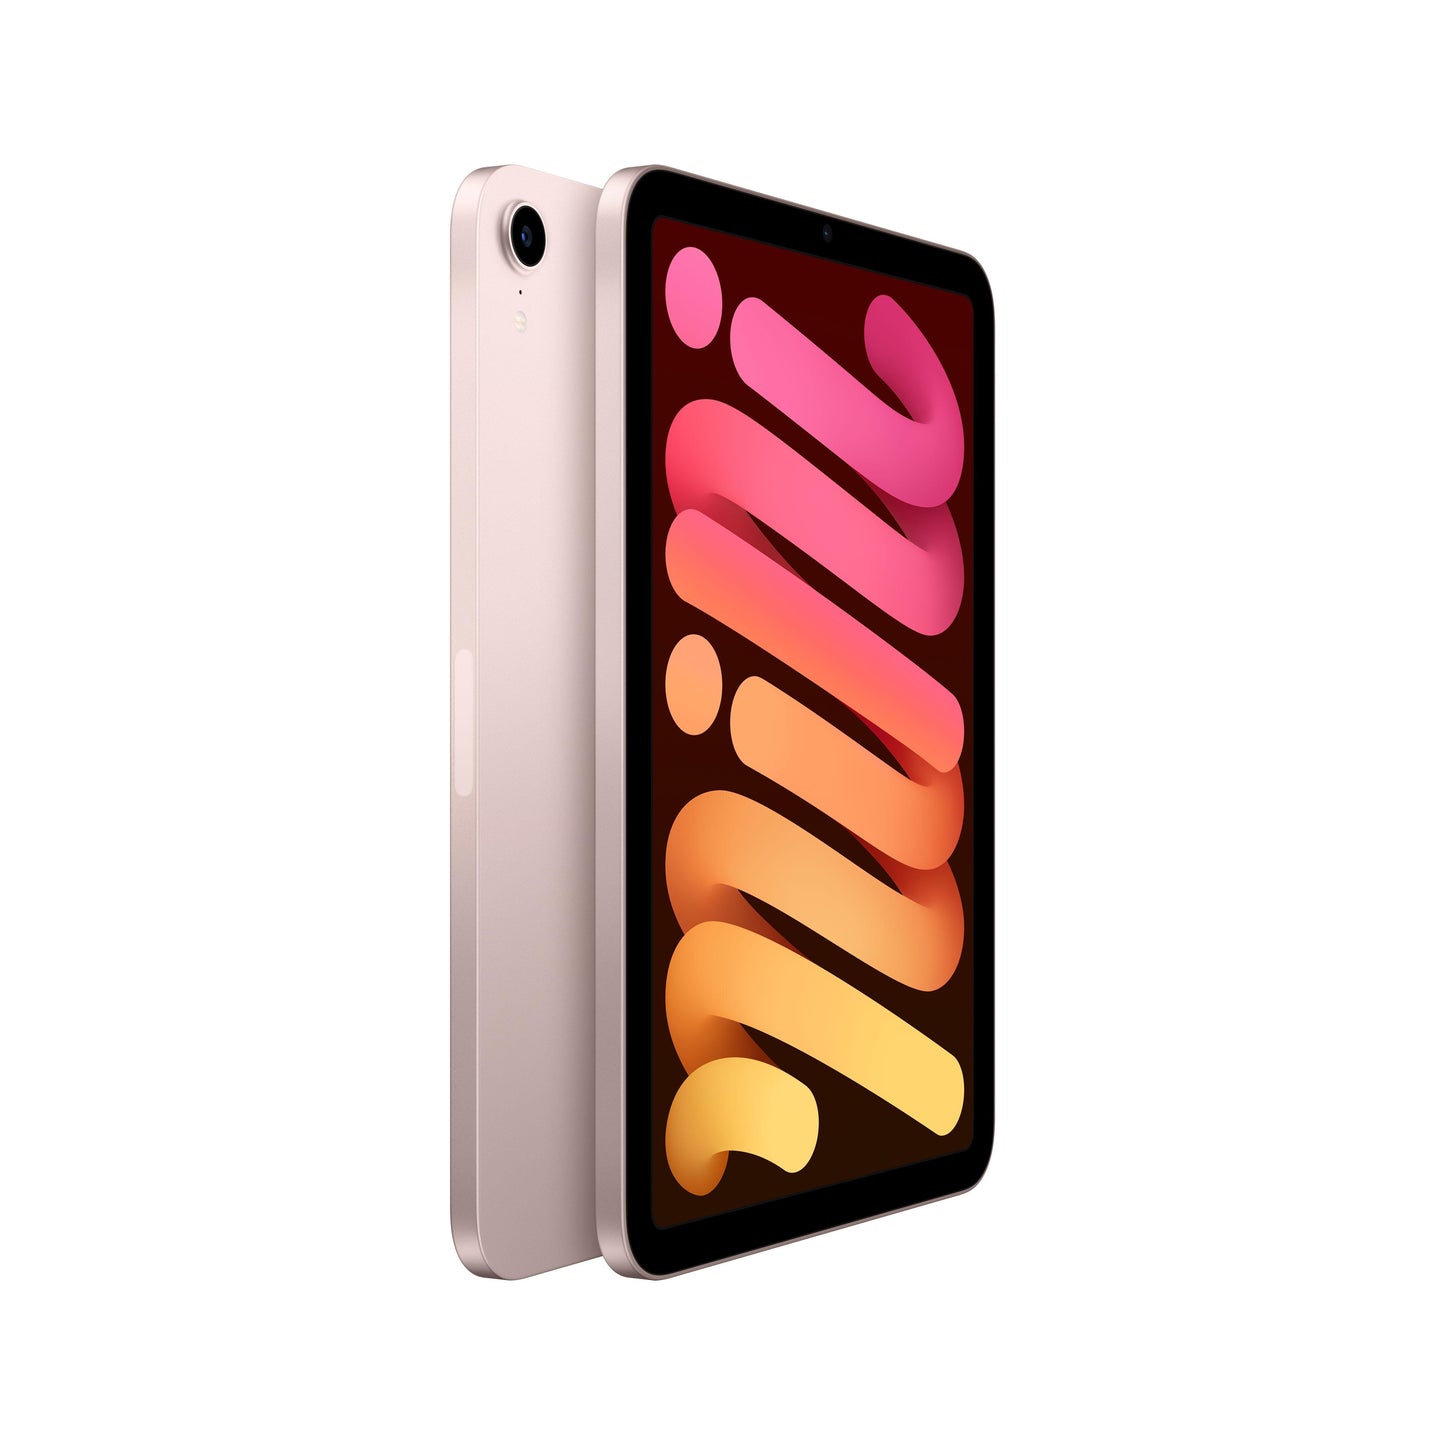 2021 iPad mini Wi-Fi + Cellular 64GB - Pink (6th generation)